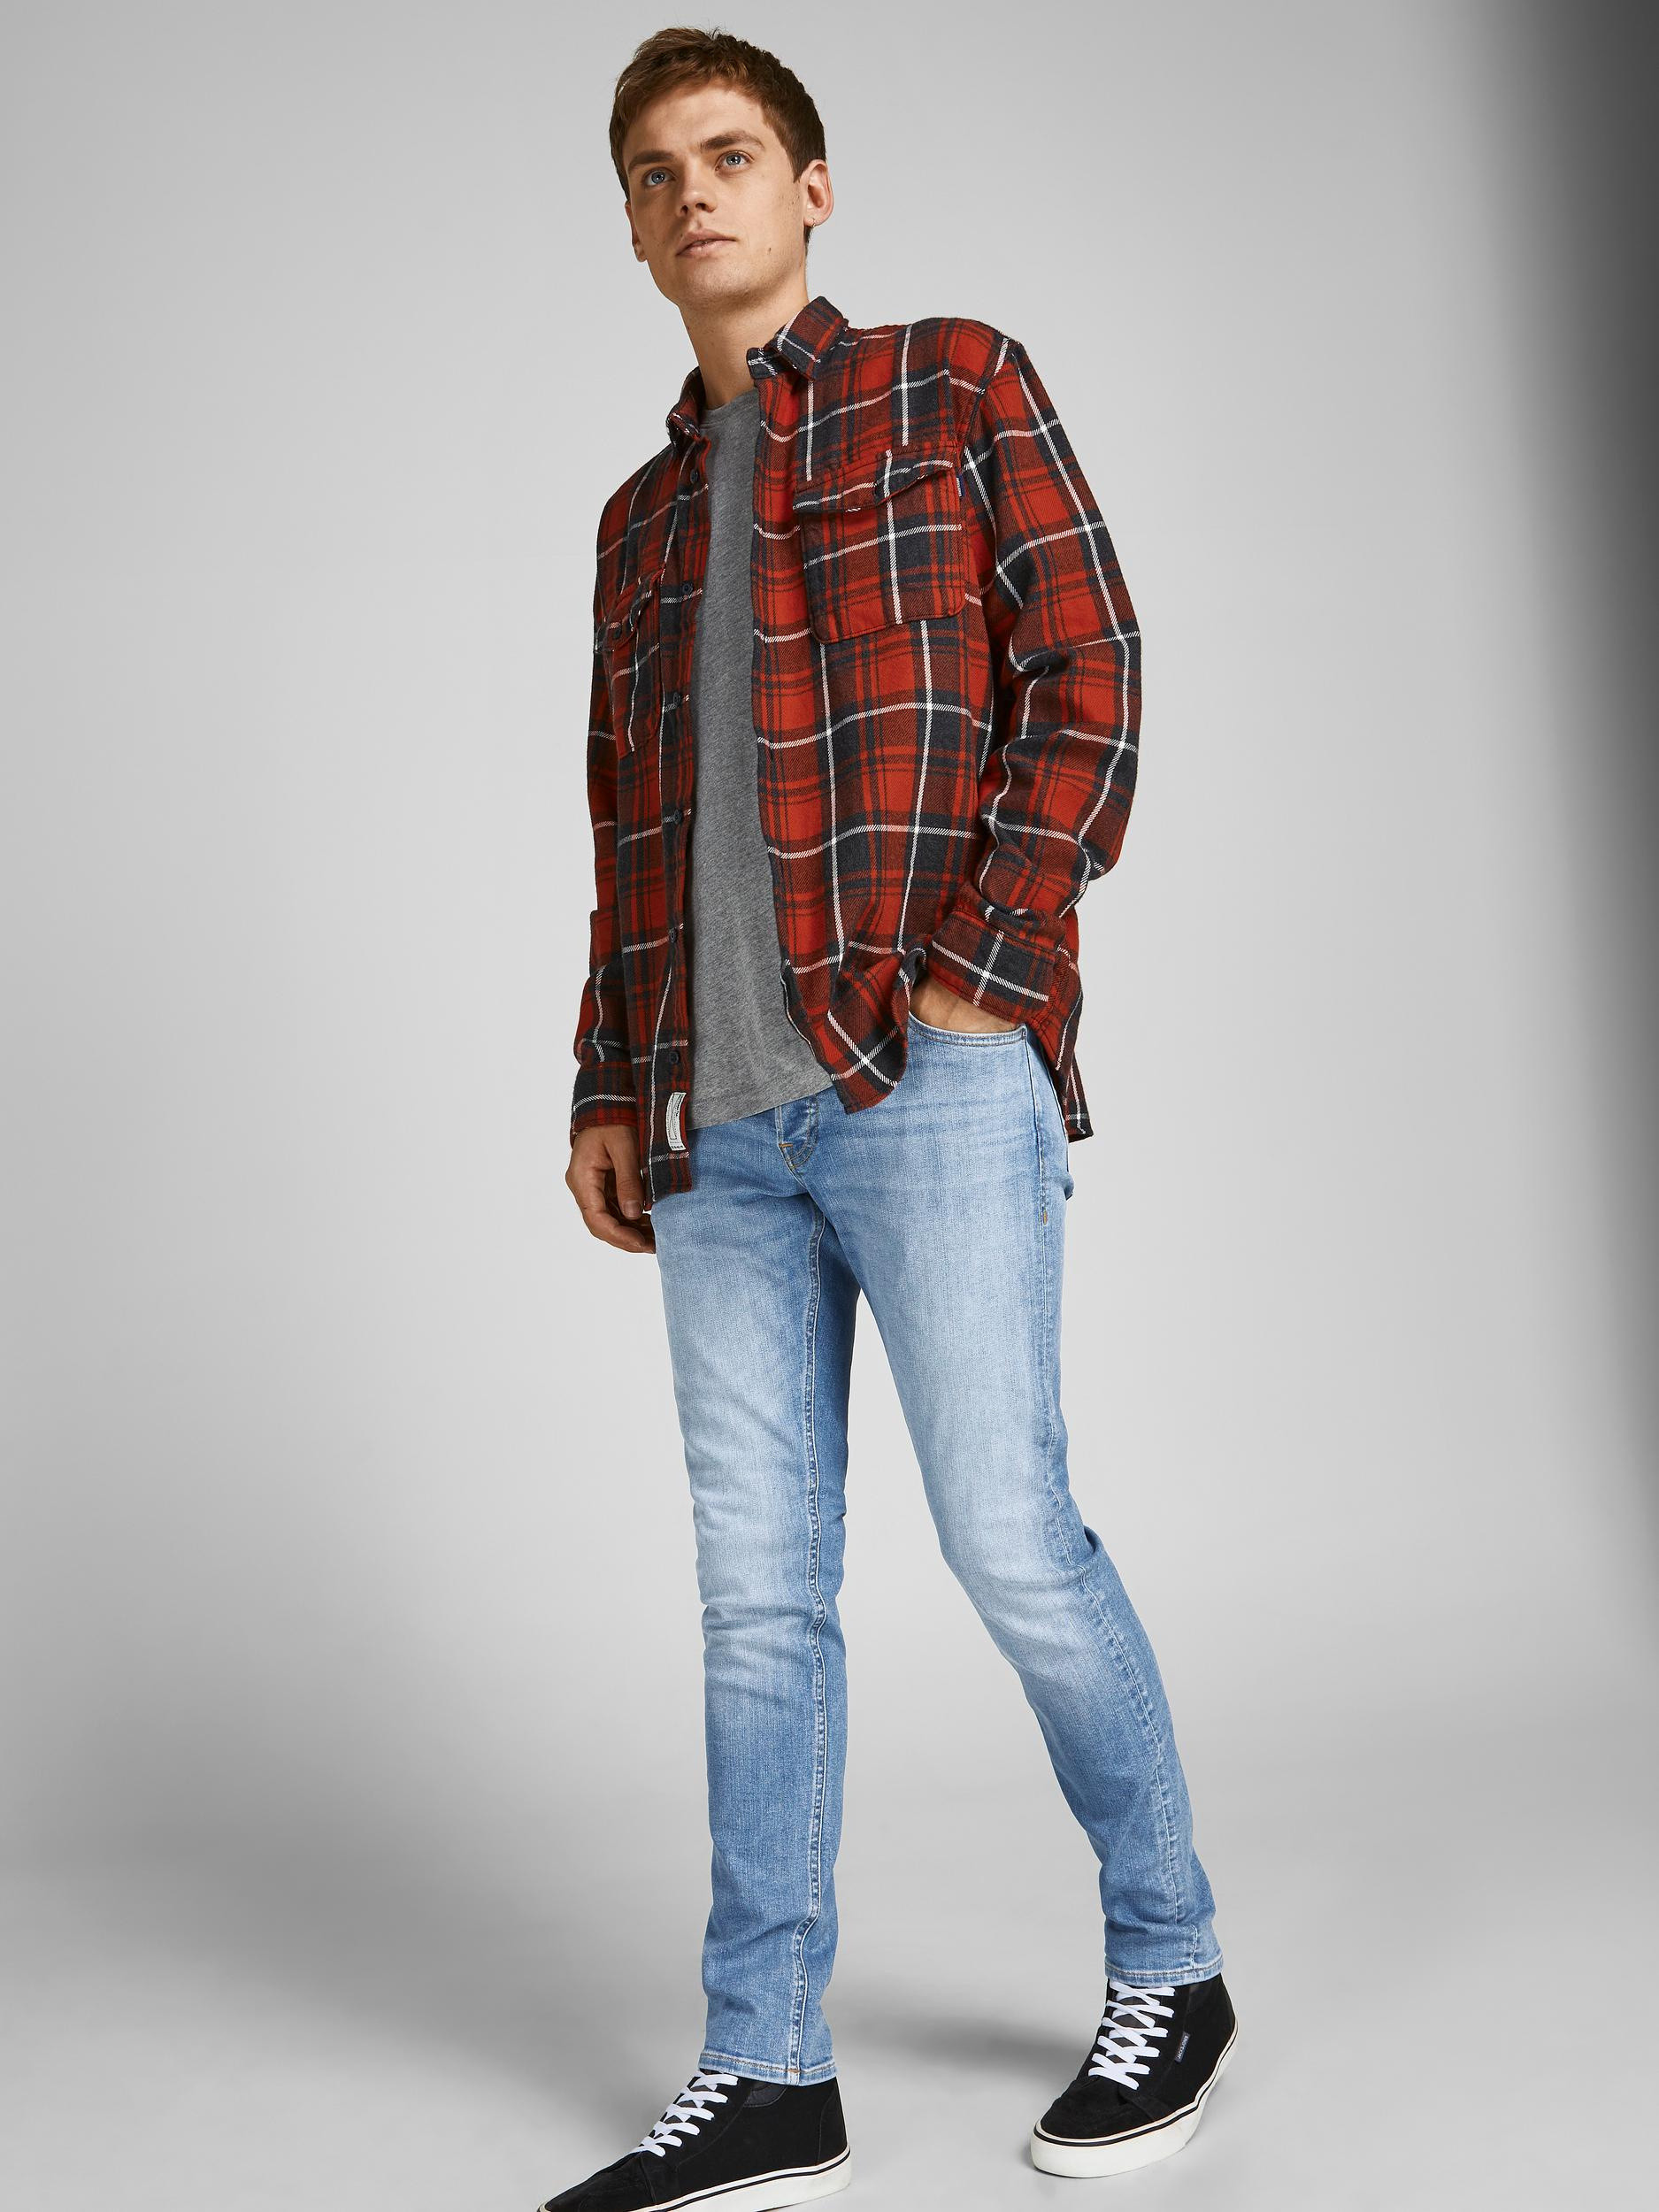 Jack & Jones - Jeans cinque tasche slim fit, Denim, large image number 5